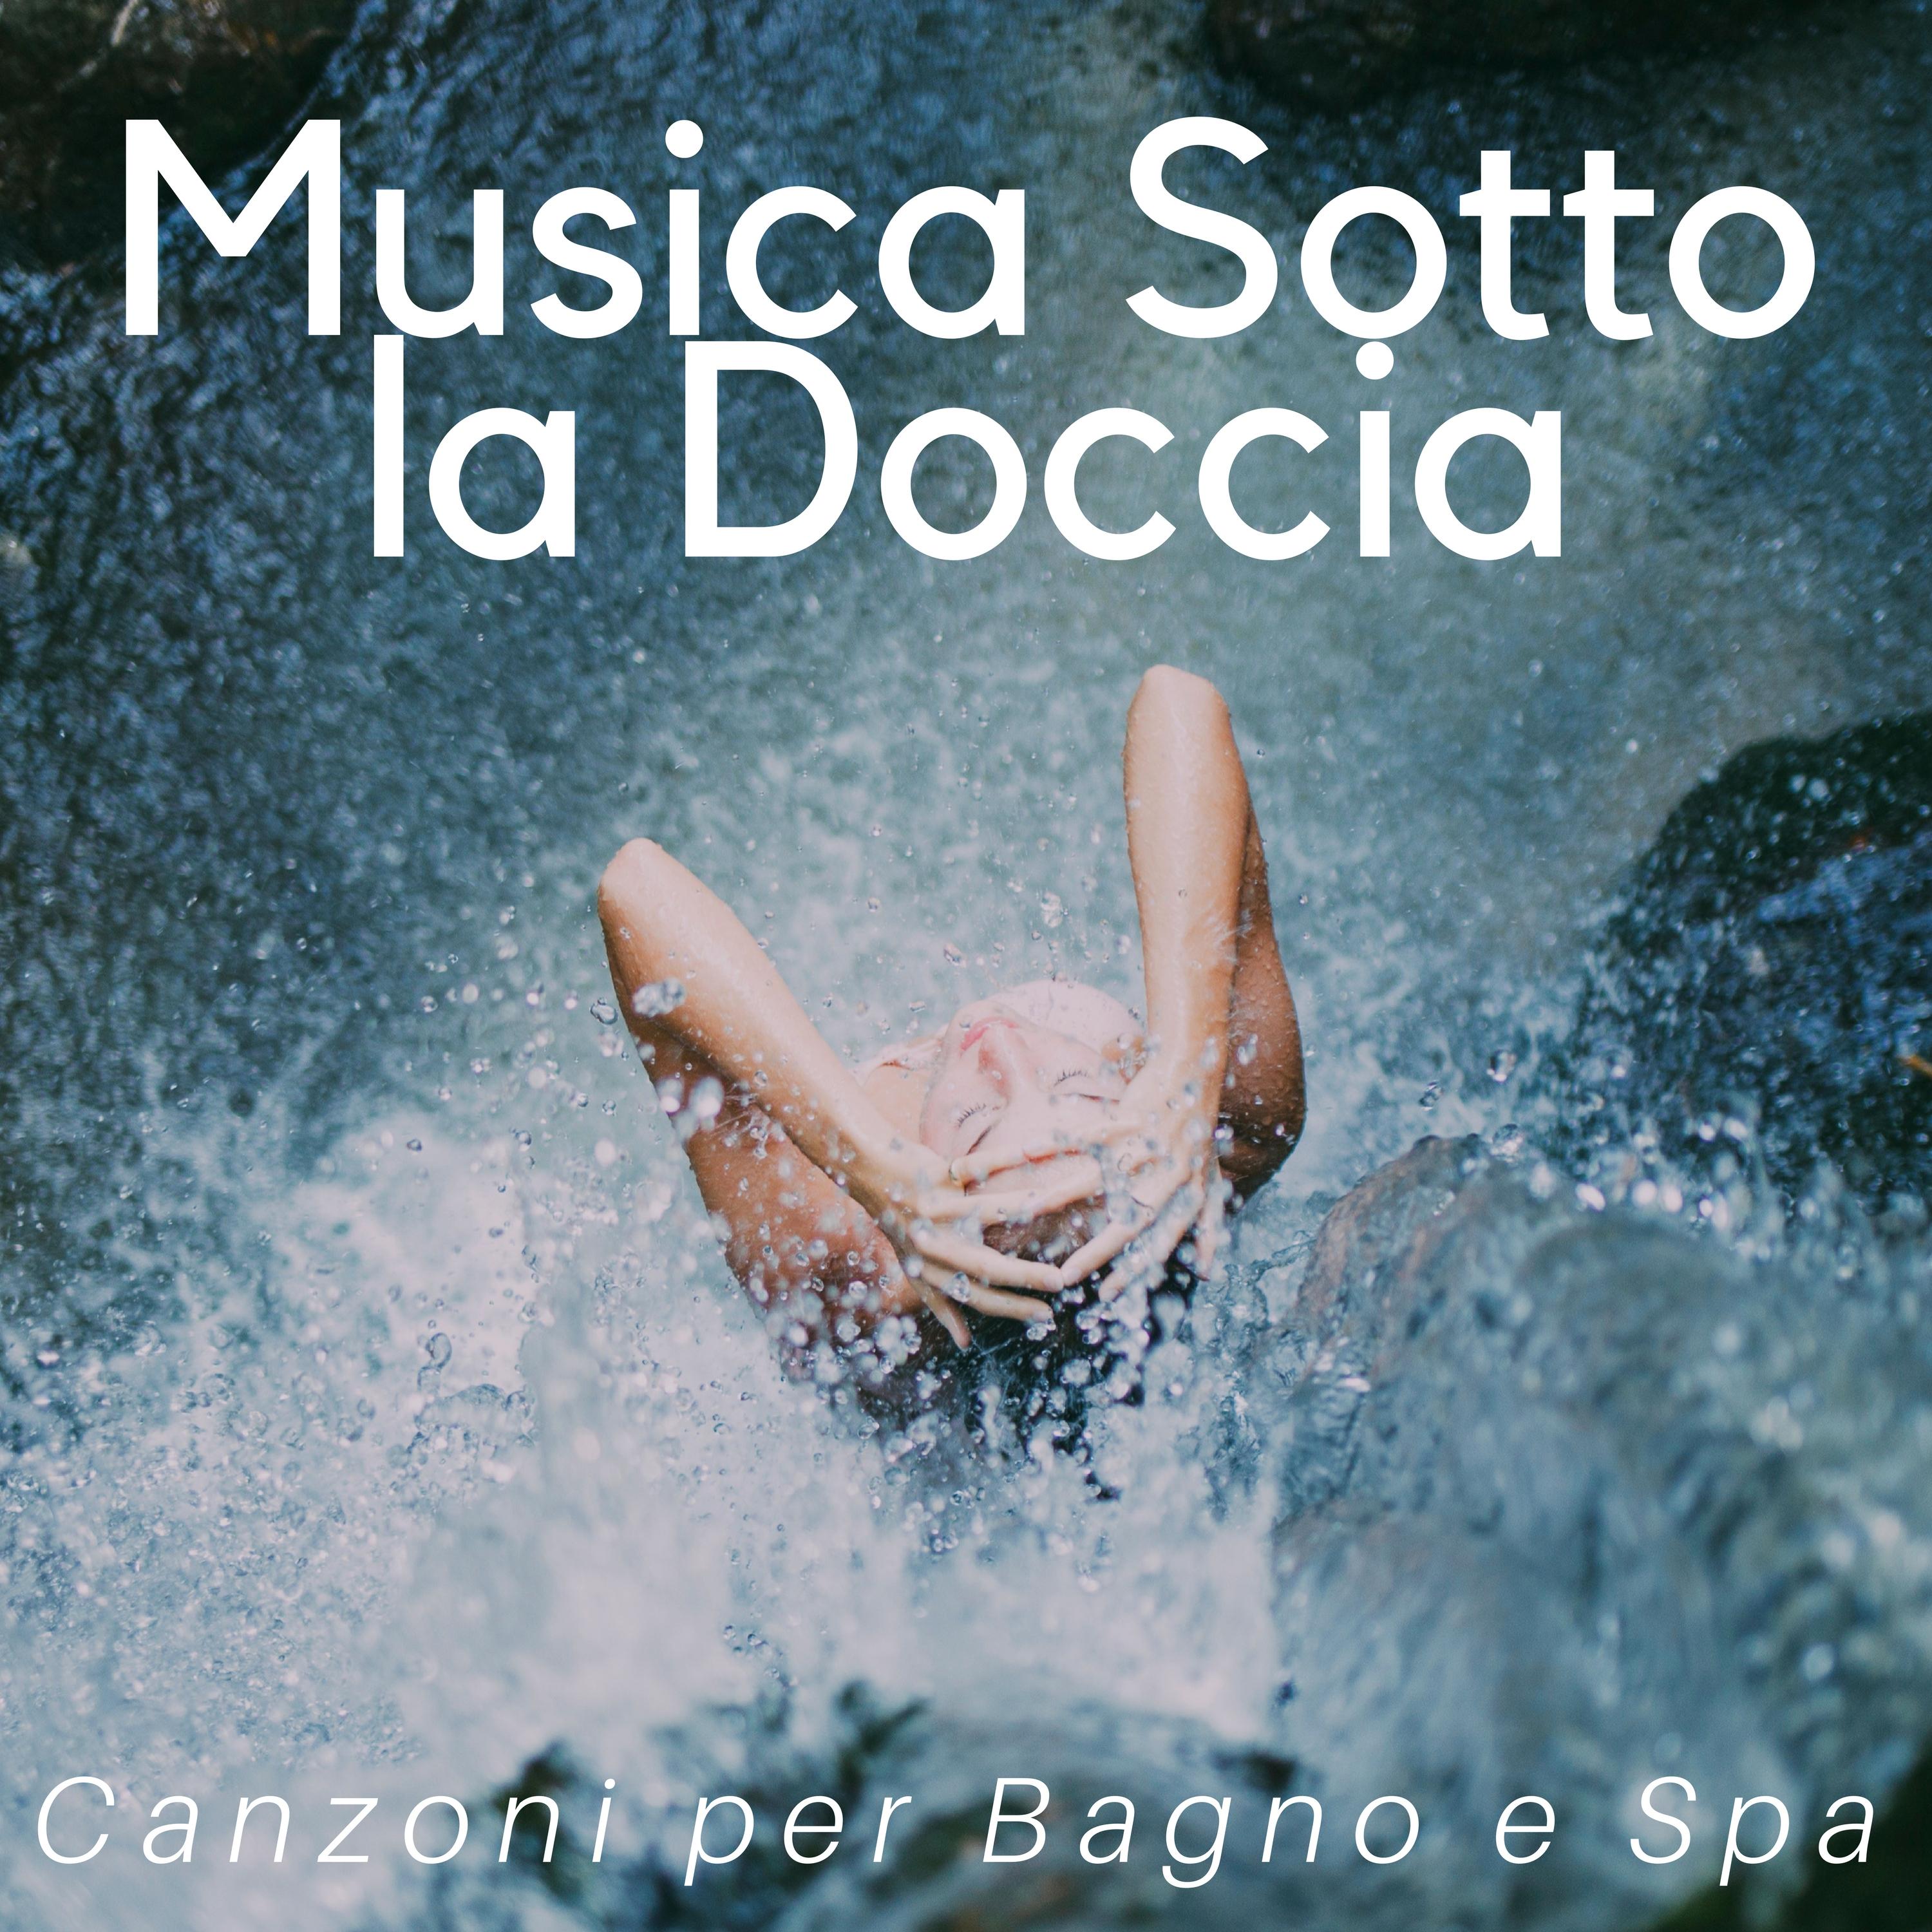 Musica Sotto la Doccia - Canzoni per Bagno e Spa, Musica per Massaggi Mp3